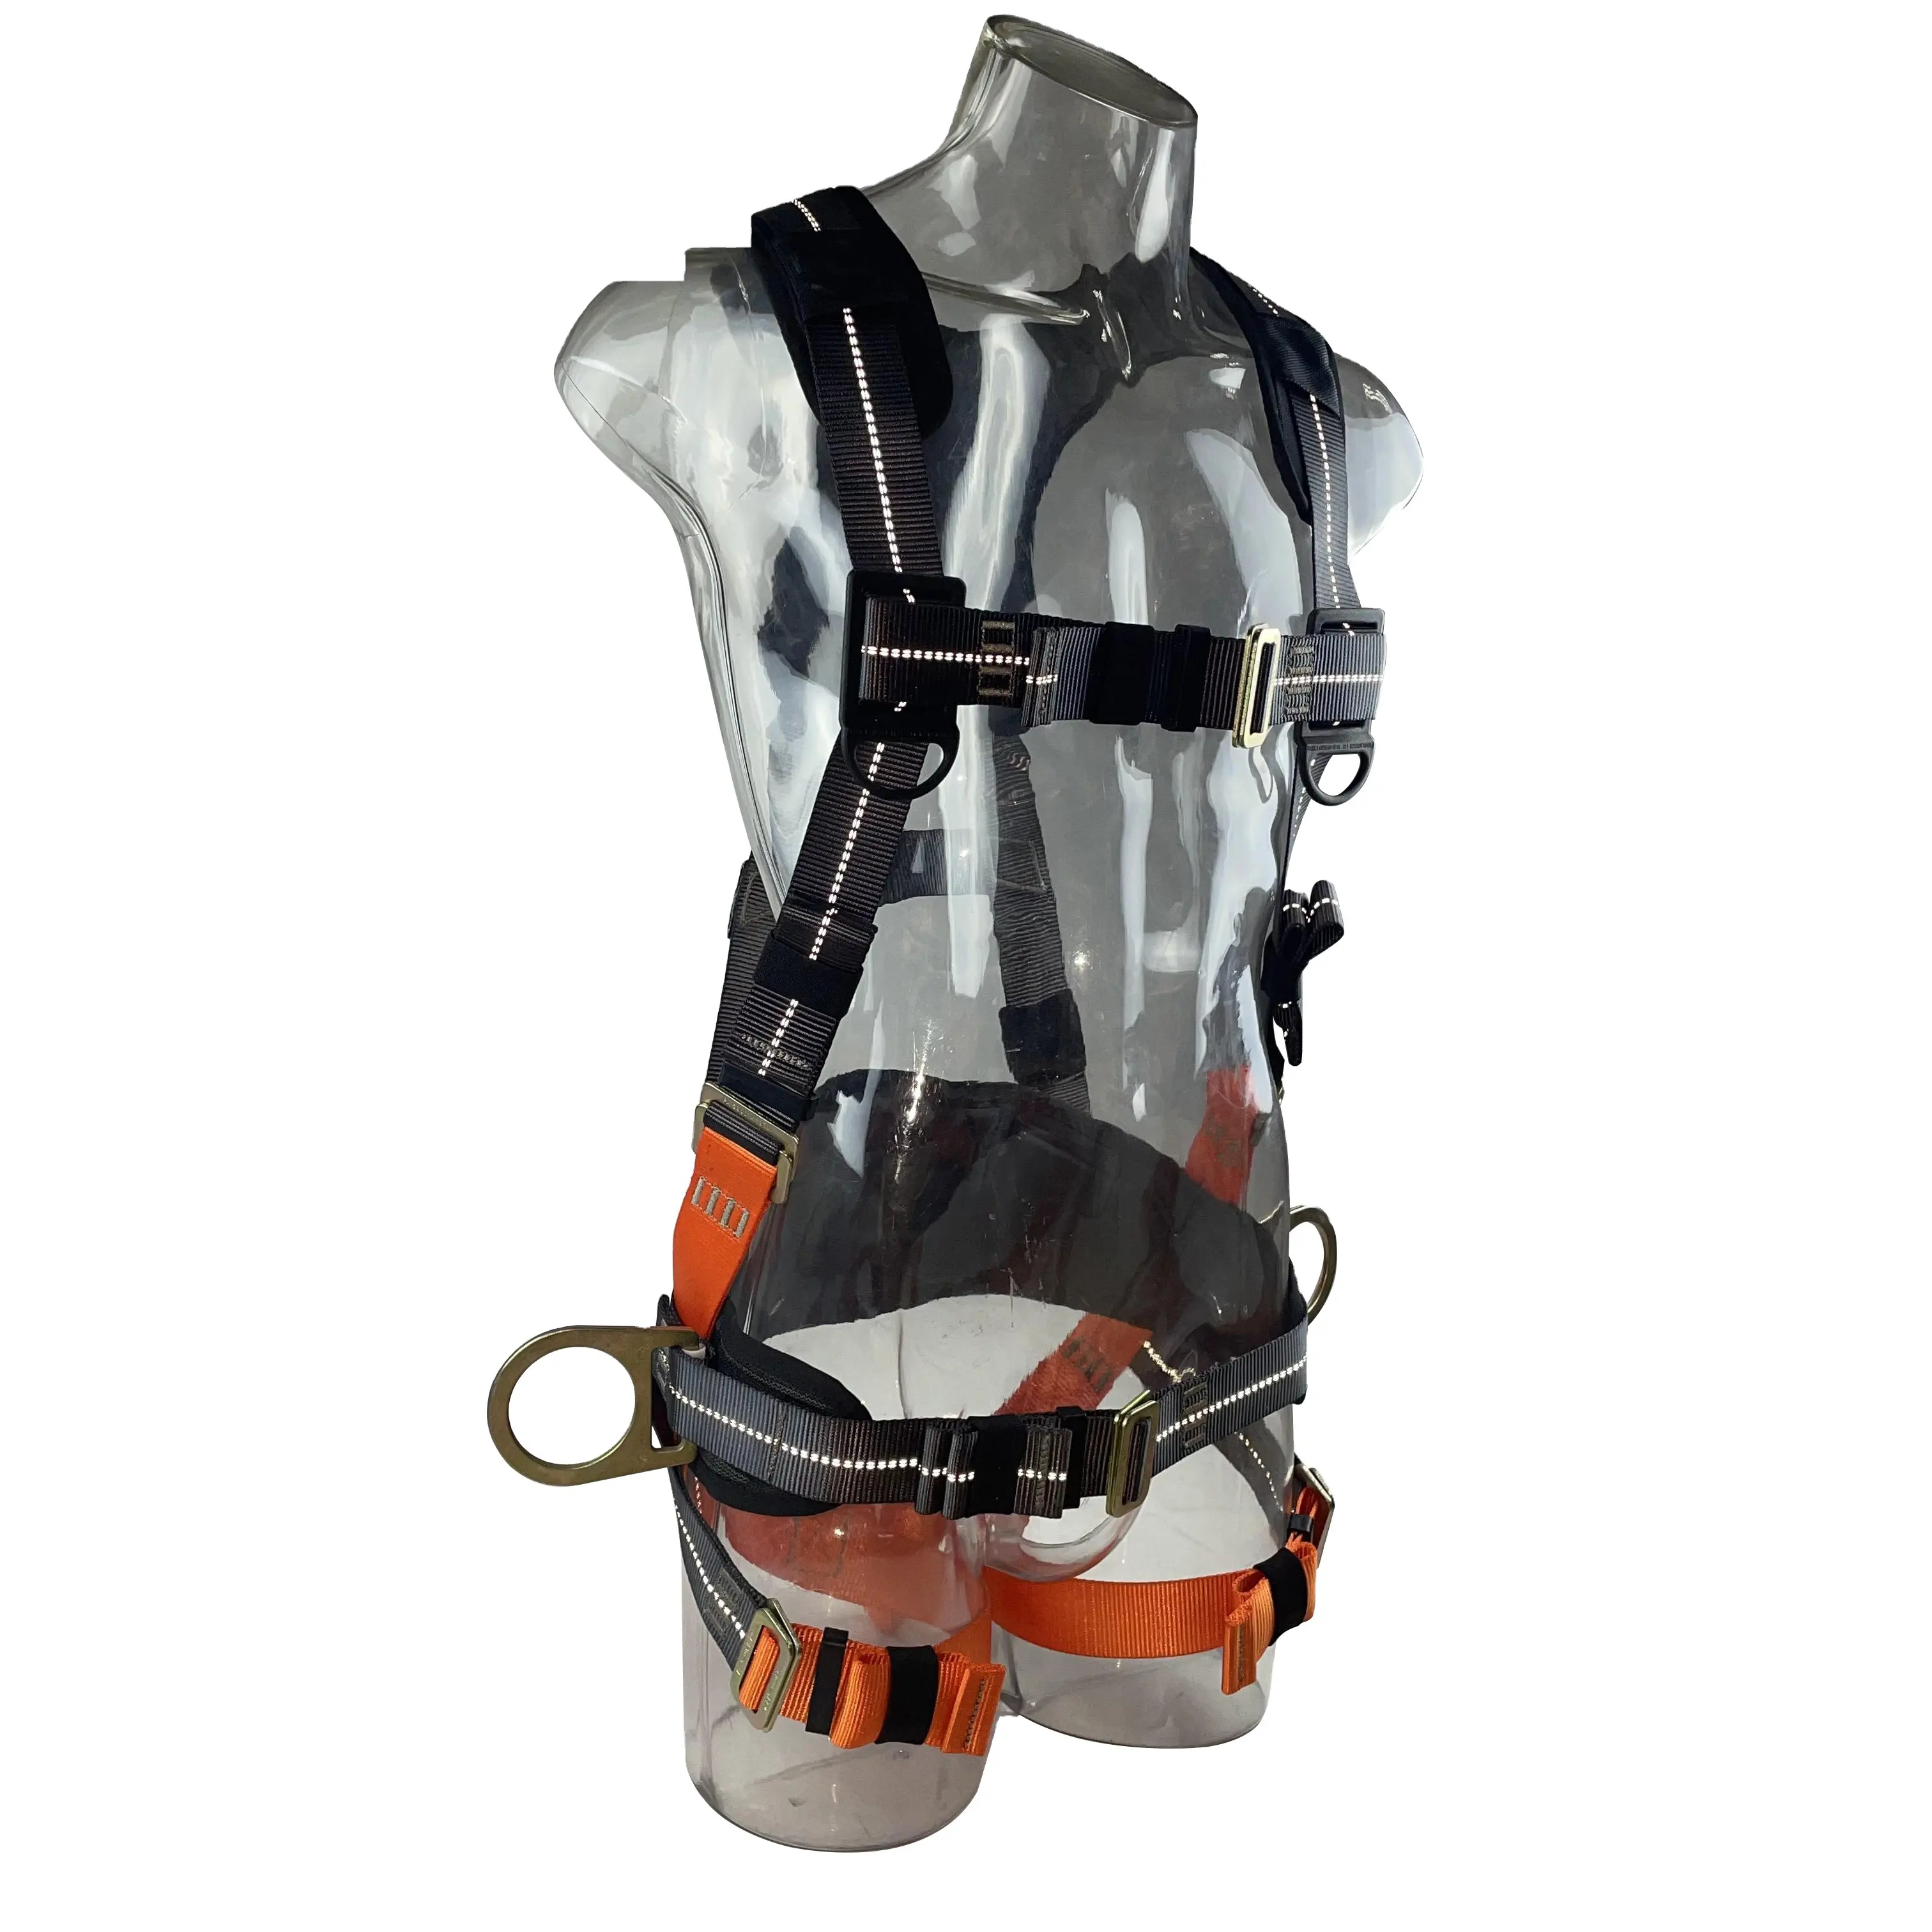 Di alta qualità ANT5PPE imbracatura di sicurezza cintura di protezione per il corpo completo di vendita calda dispositivi di protezione individuale per la protezione di caduta